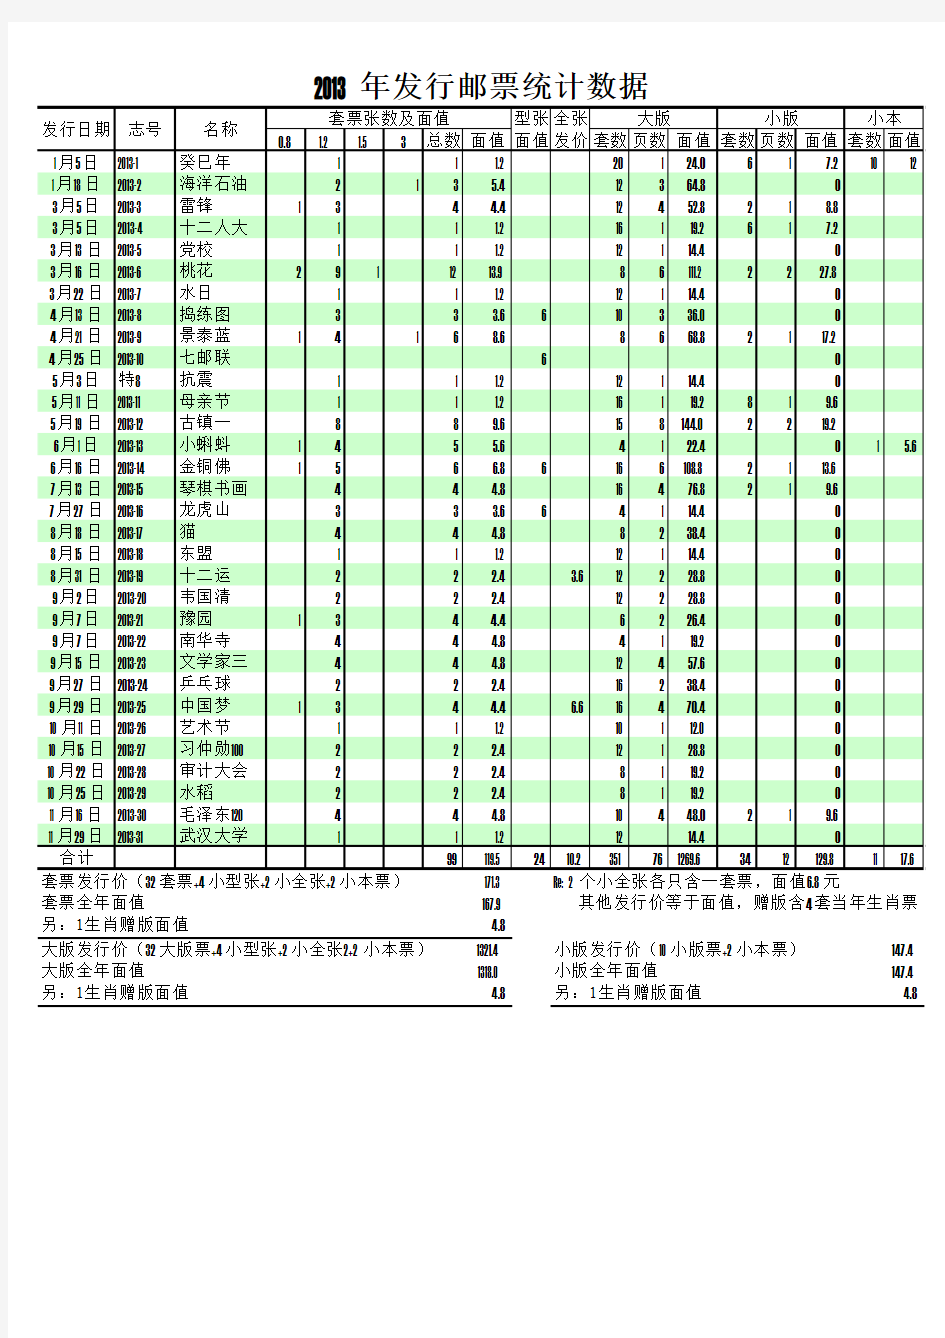 中国邮政2013年邮票发行统计数据